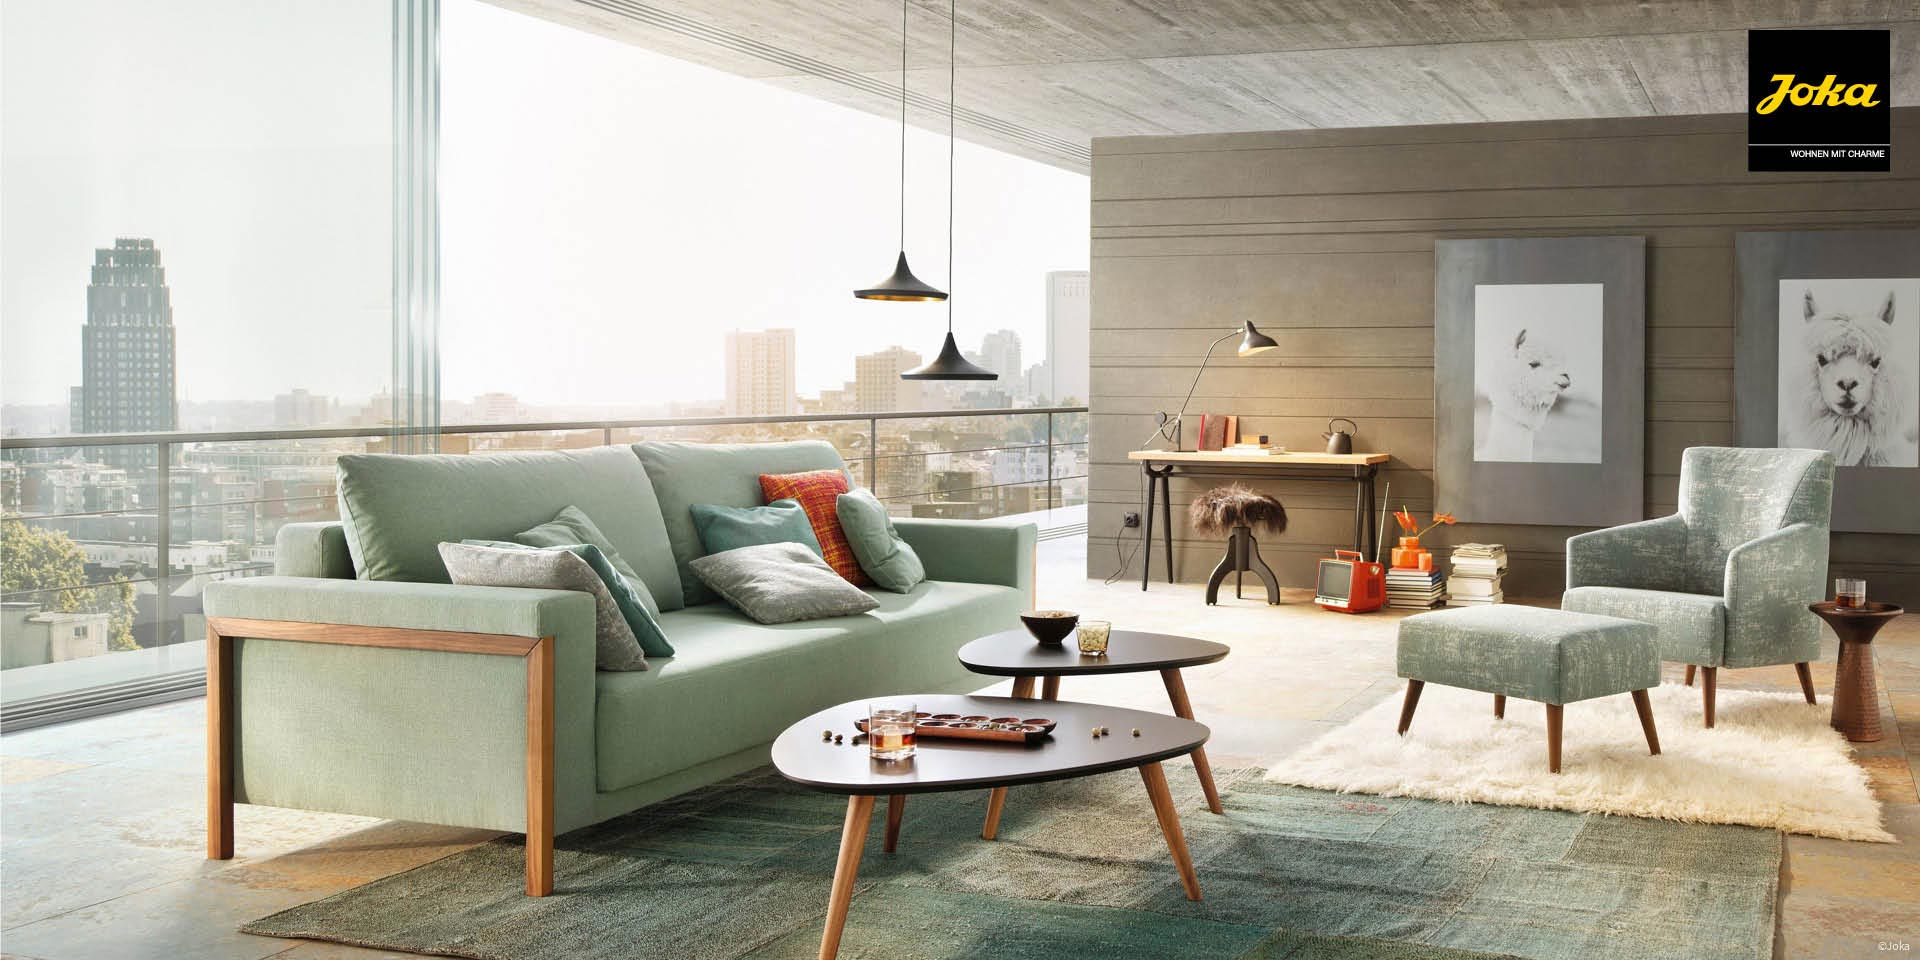 Wir bieten Ihnen die aktuellen Kollektion der hochwertigen Polstermöbel der Marke JOKA aus Österreich im Raum Hamburg - Ihre Möbeltischlerei woodendesign